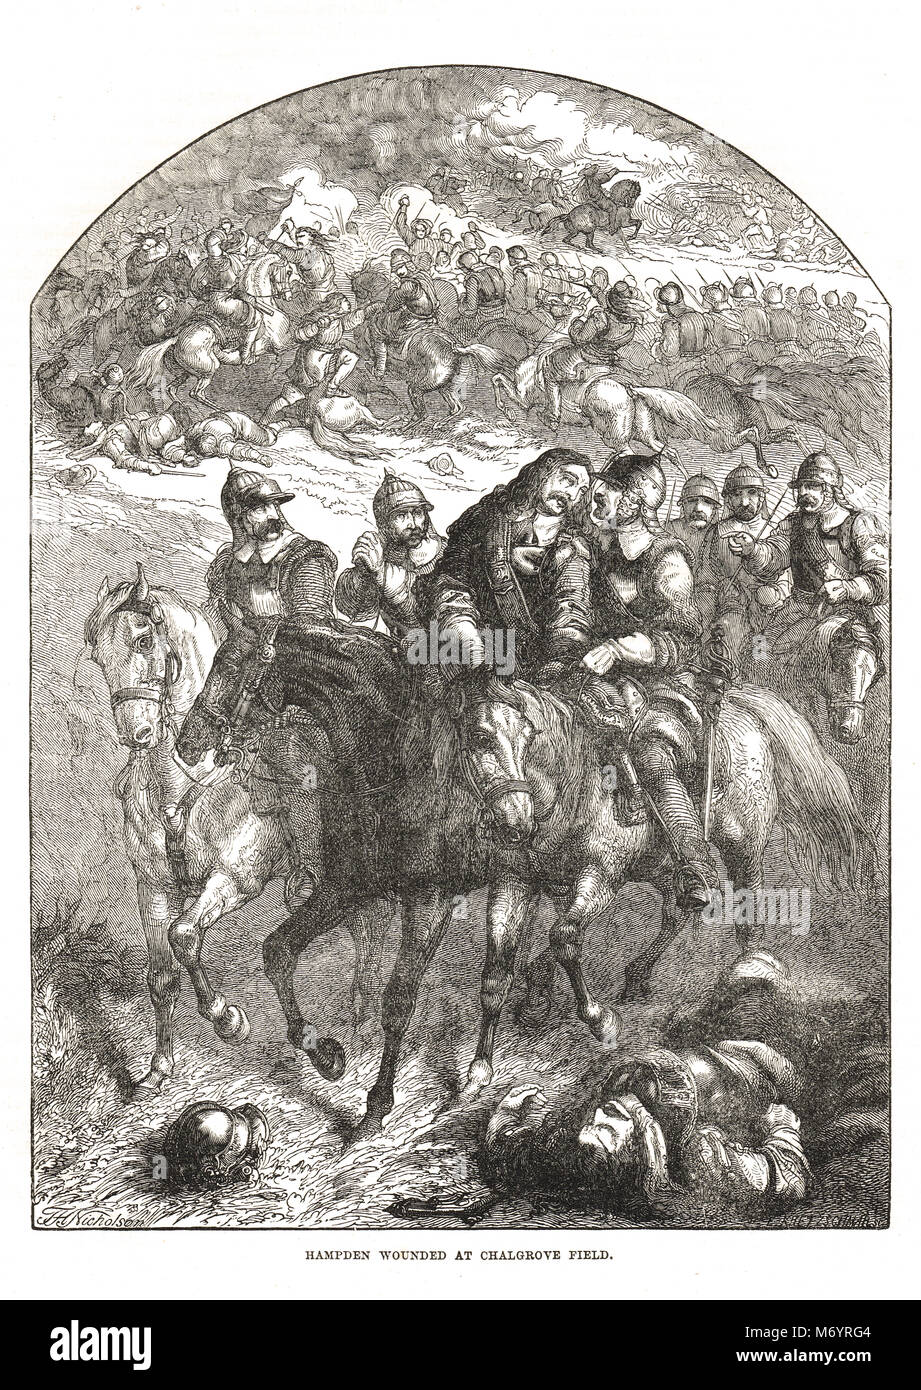 Parlamentarier John Hampden tödlich verwundet, der Schlacht von chalgrove Feld, 18. Juni 1643 Stockfoto